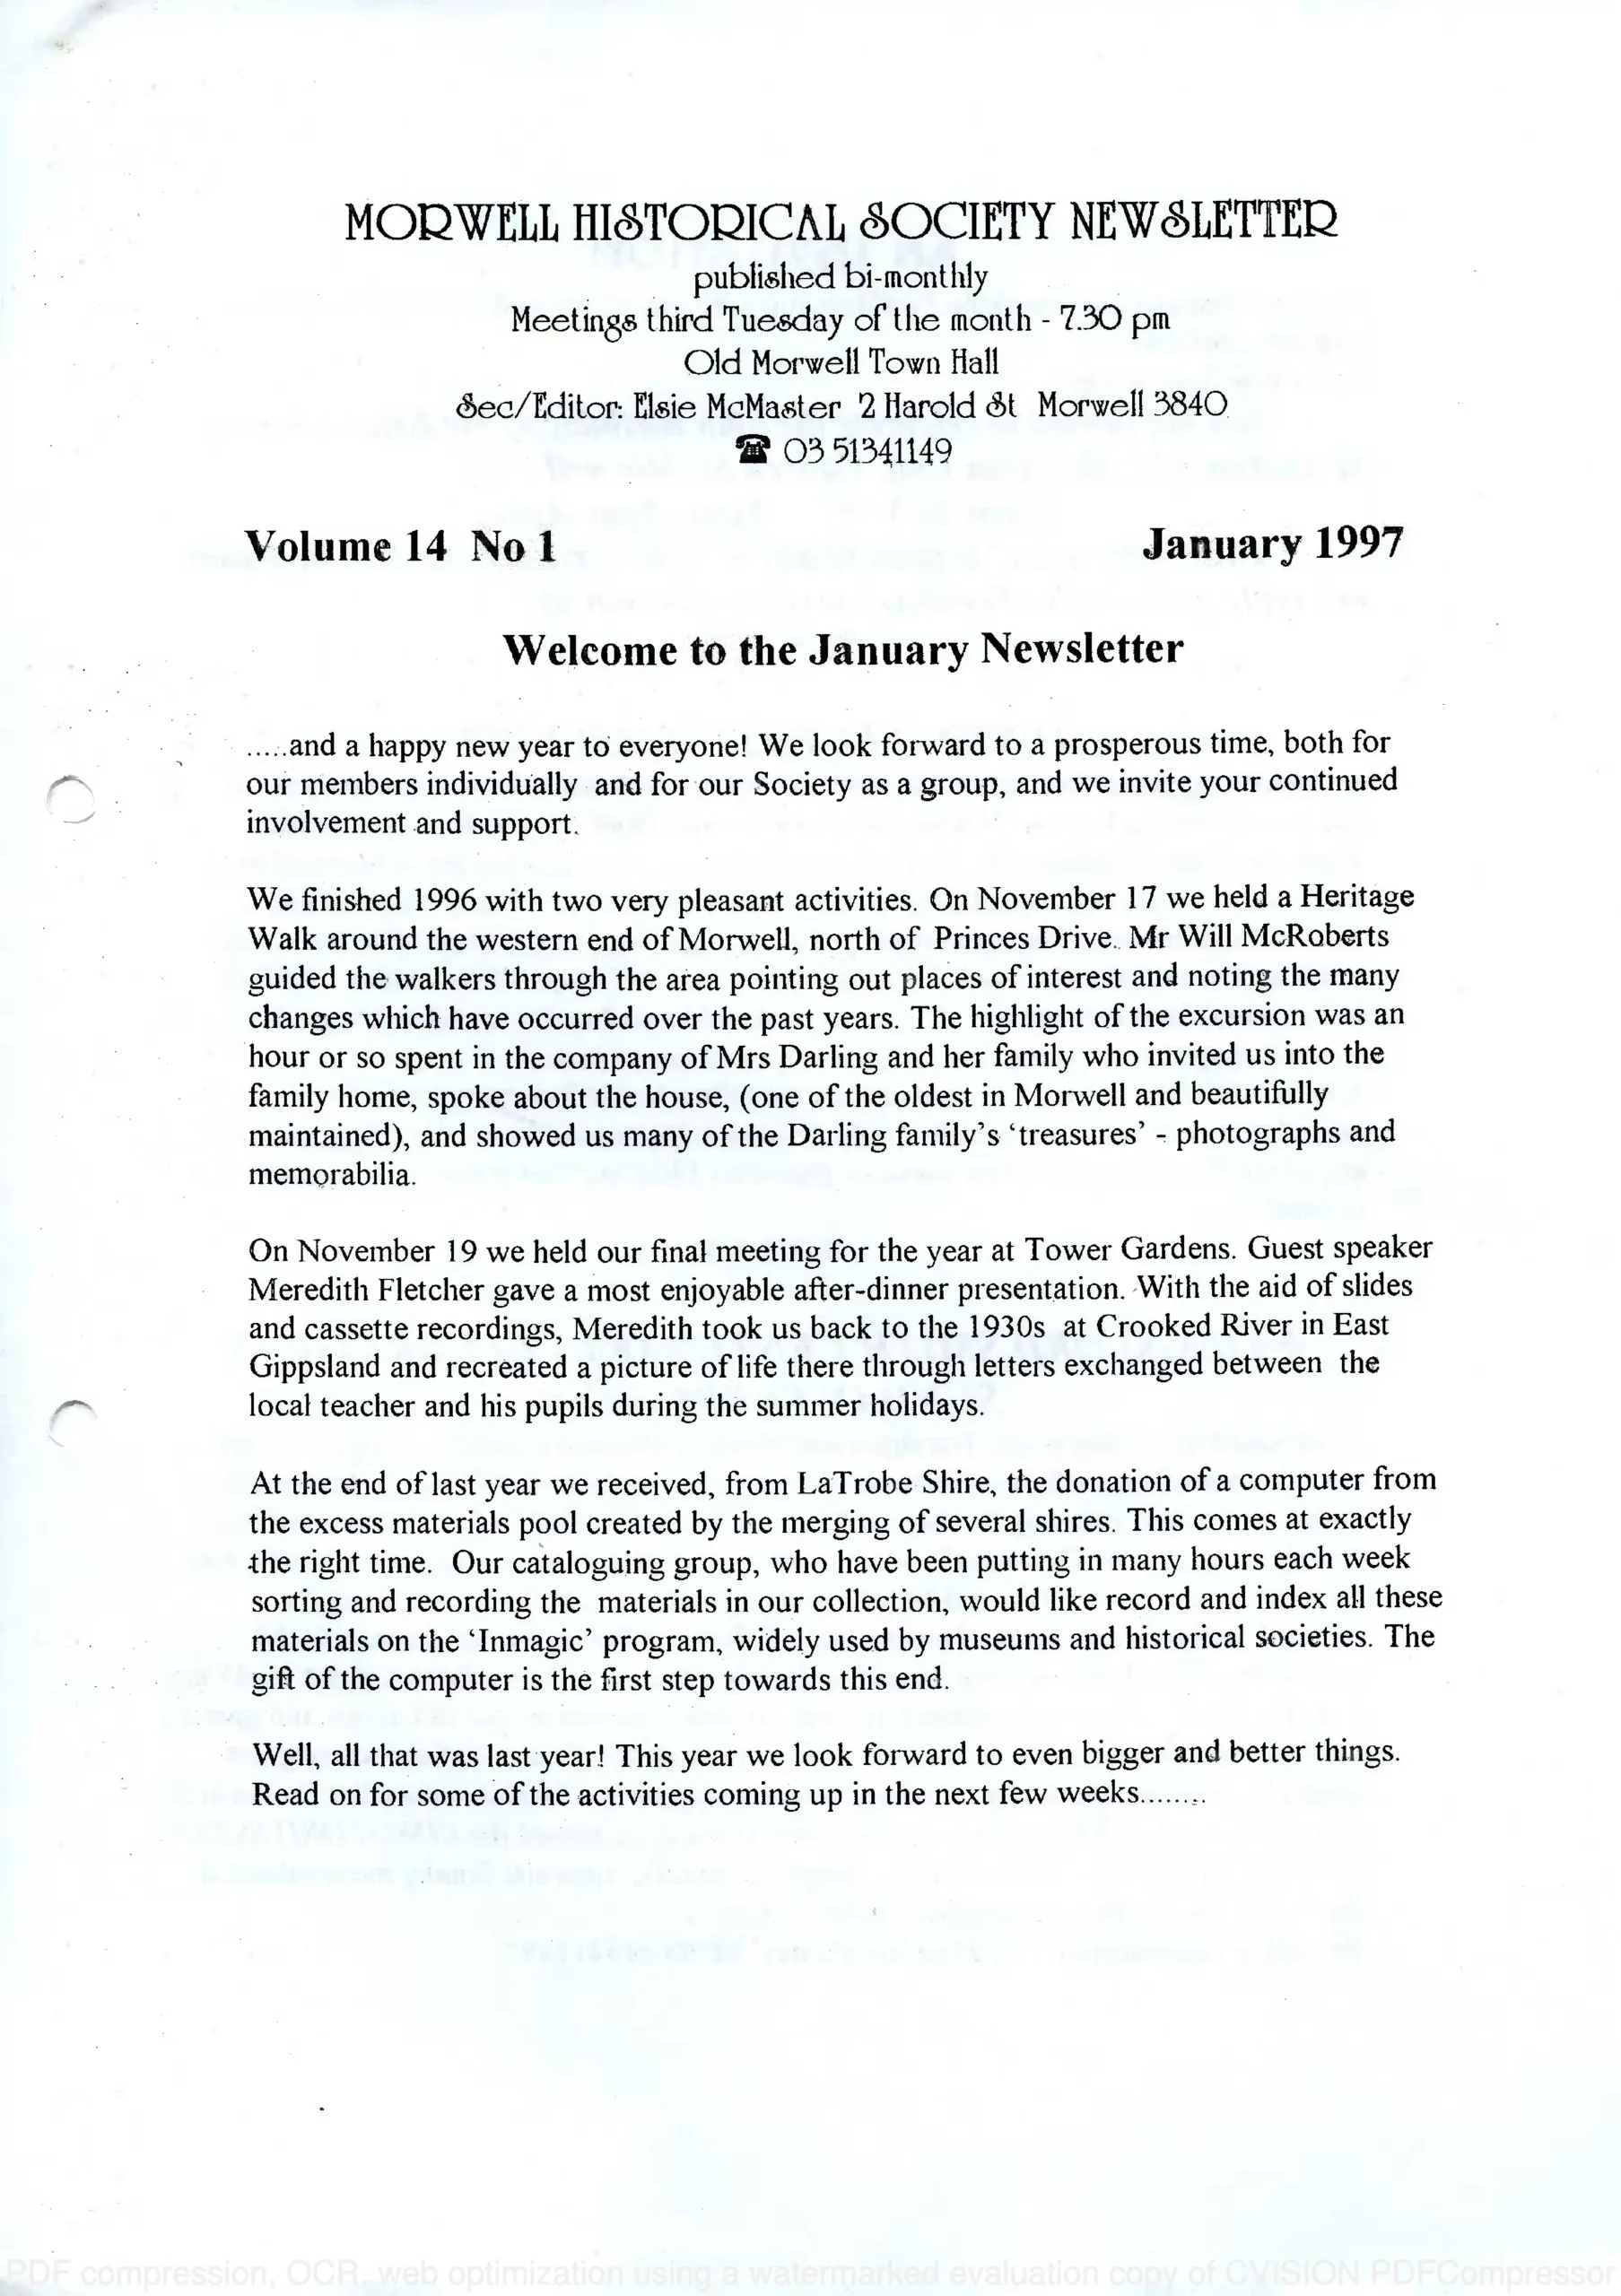 Newsletter January 1997